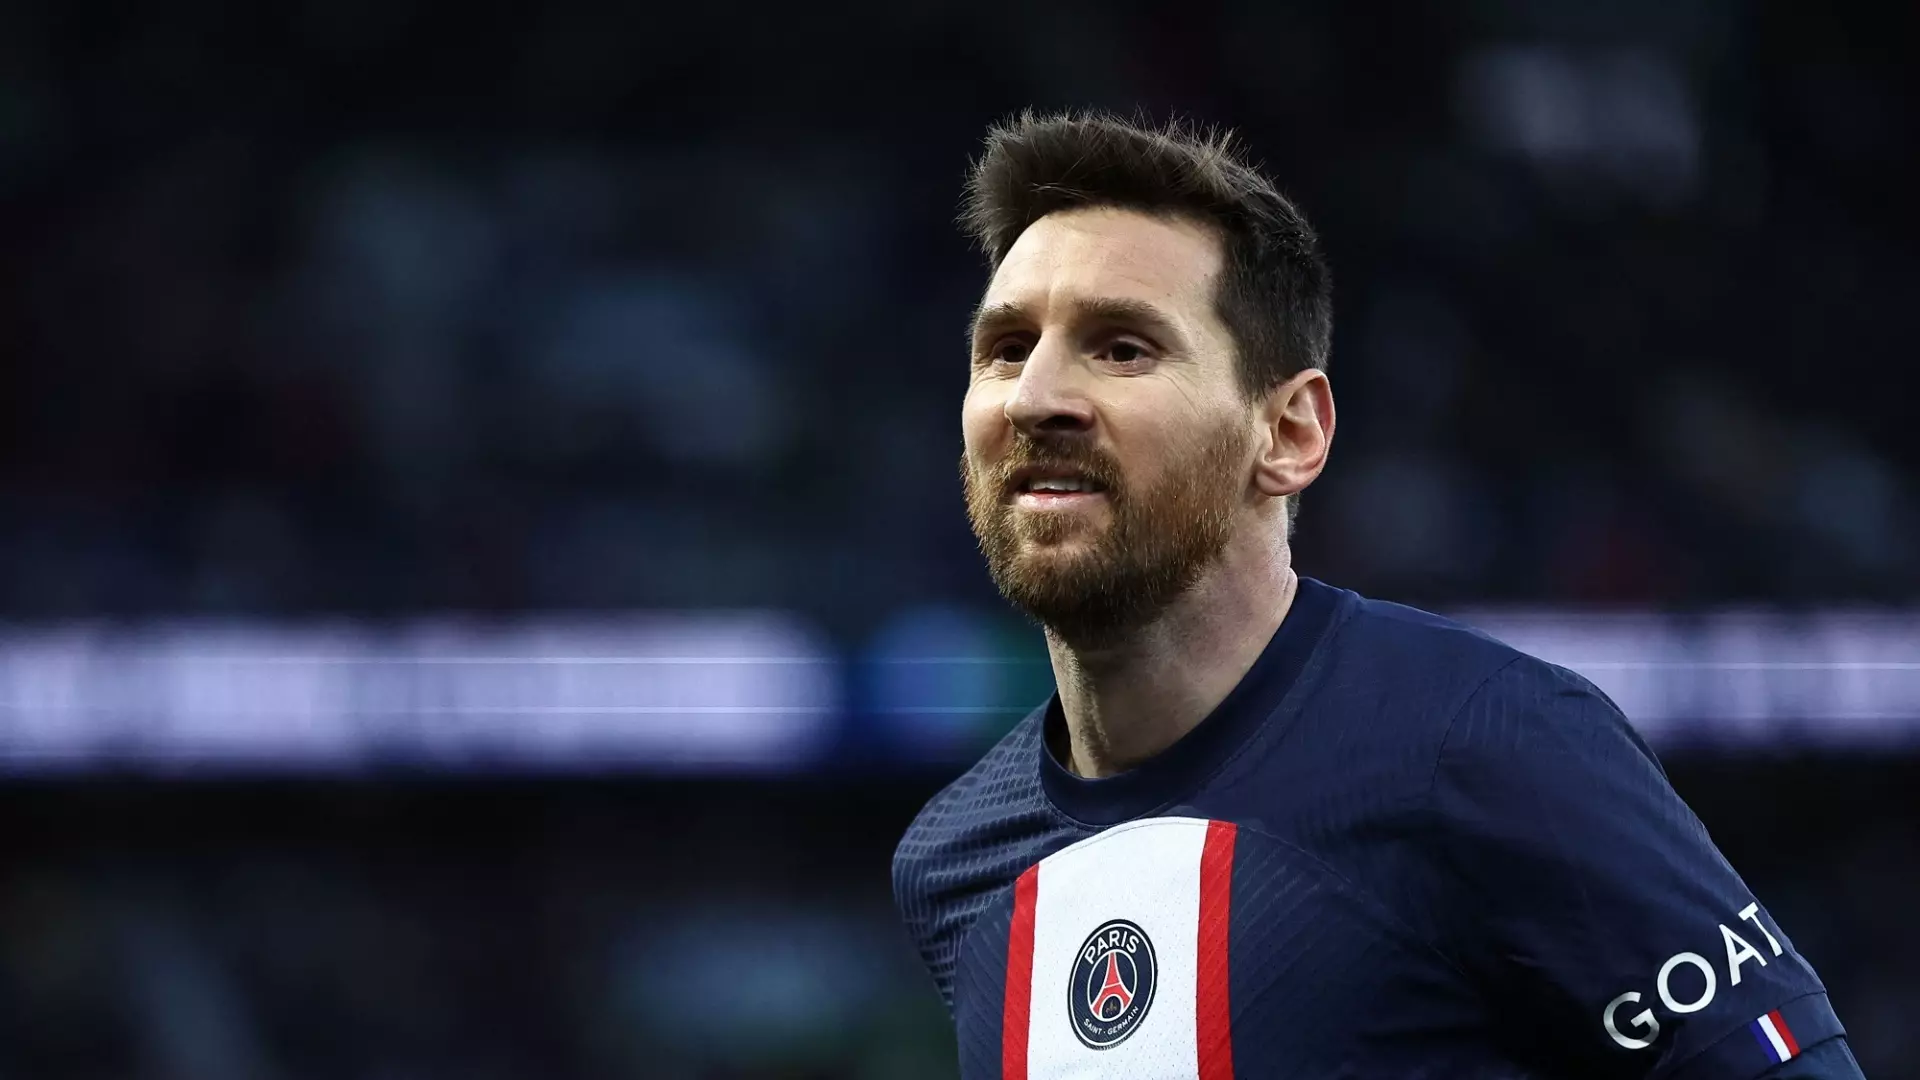 L’Al-Hilal spinge per Lionel Messi: pronto un piano per convincerlo